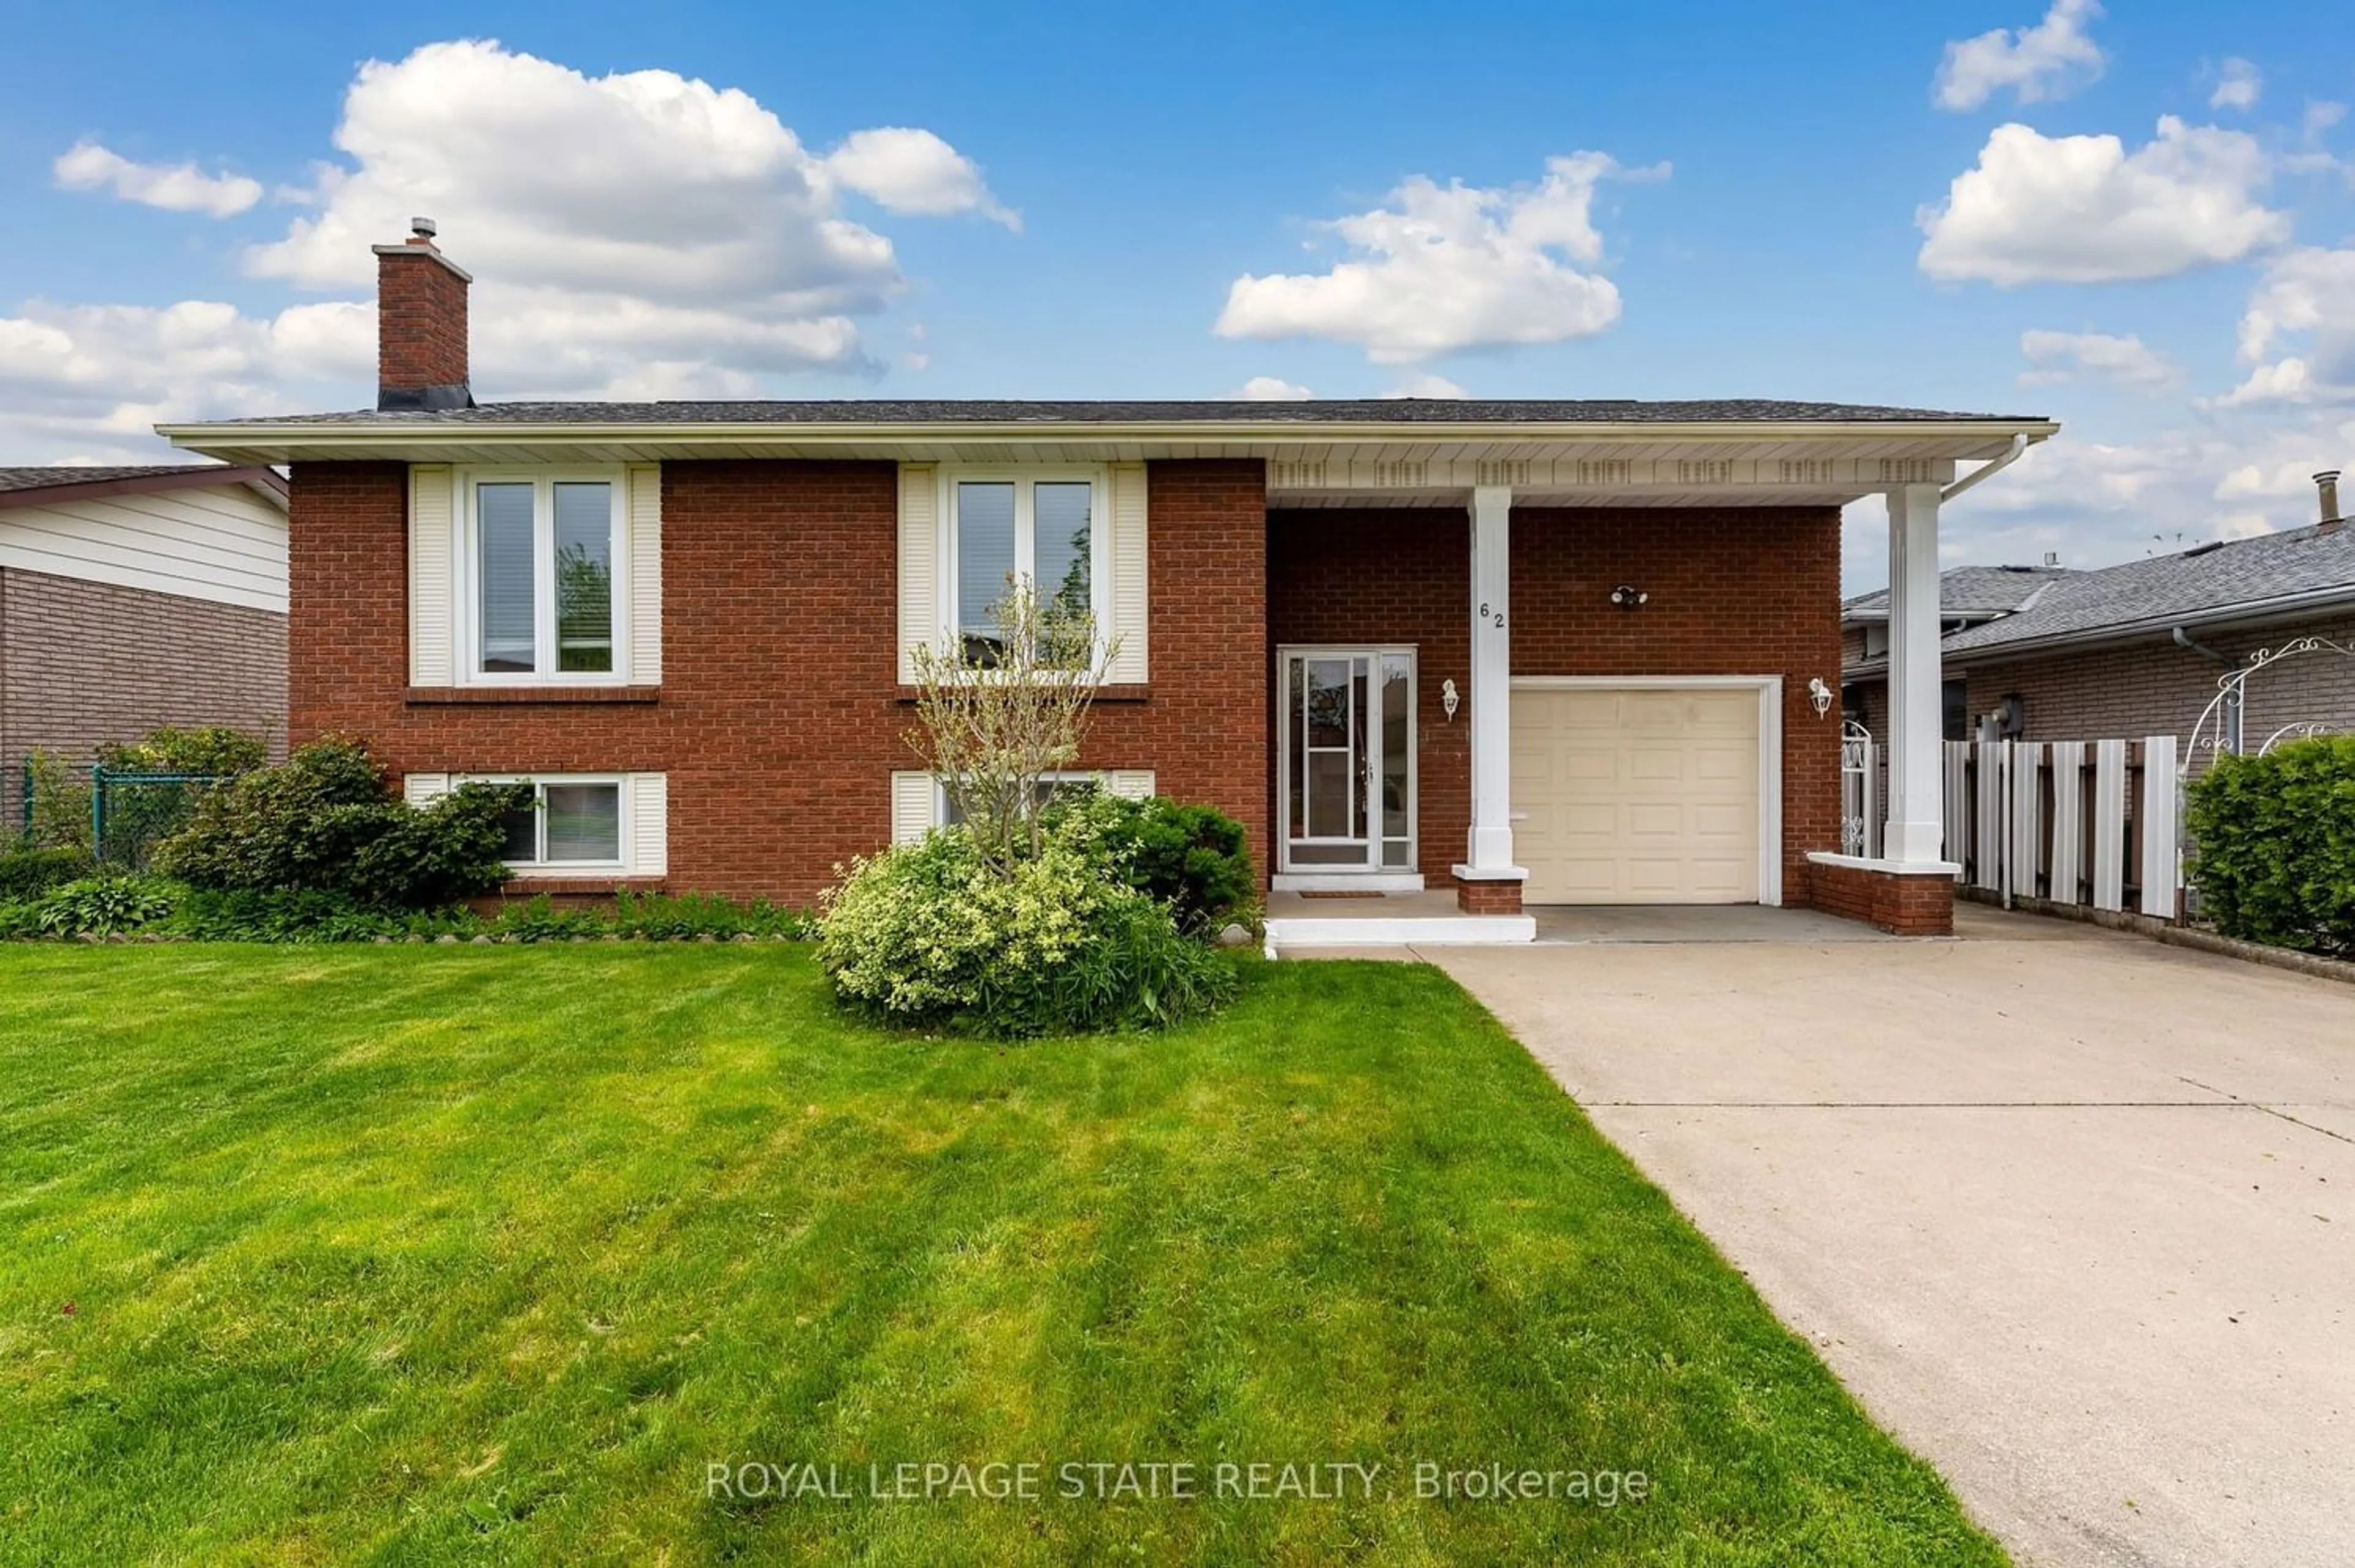 Home with brick exterior material for 62 Eastbury Dr, Hamilton Ontario L8E 2V4